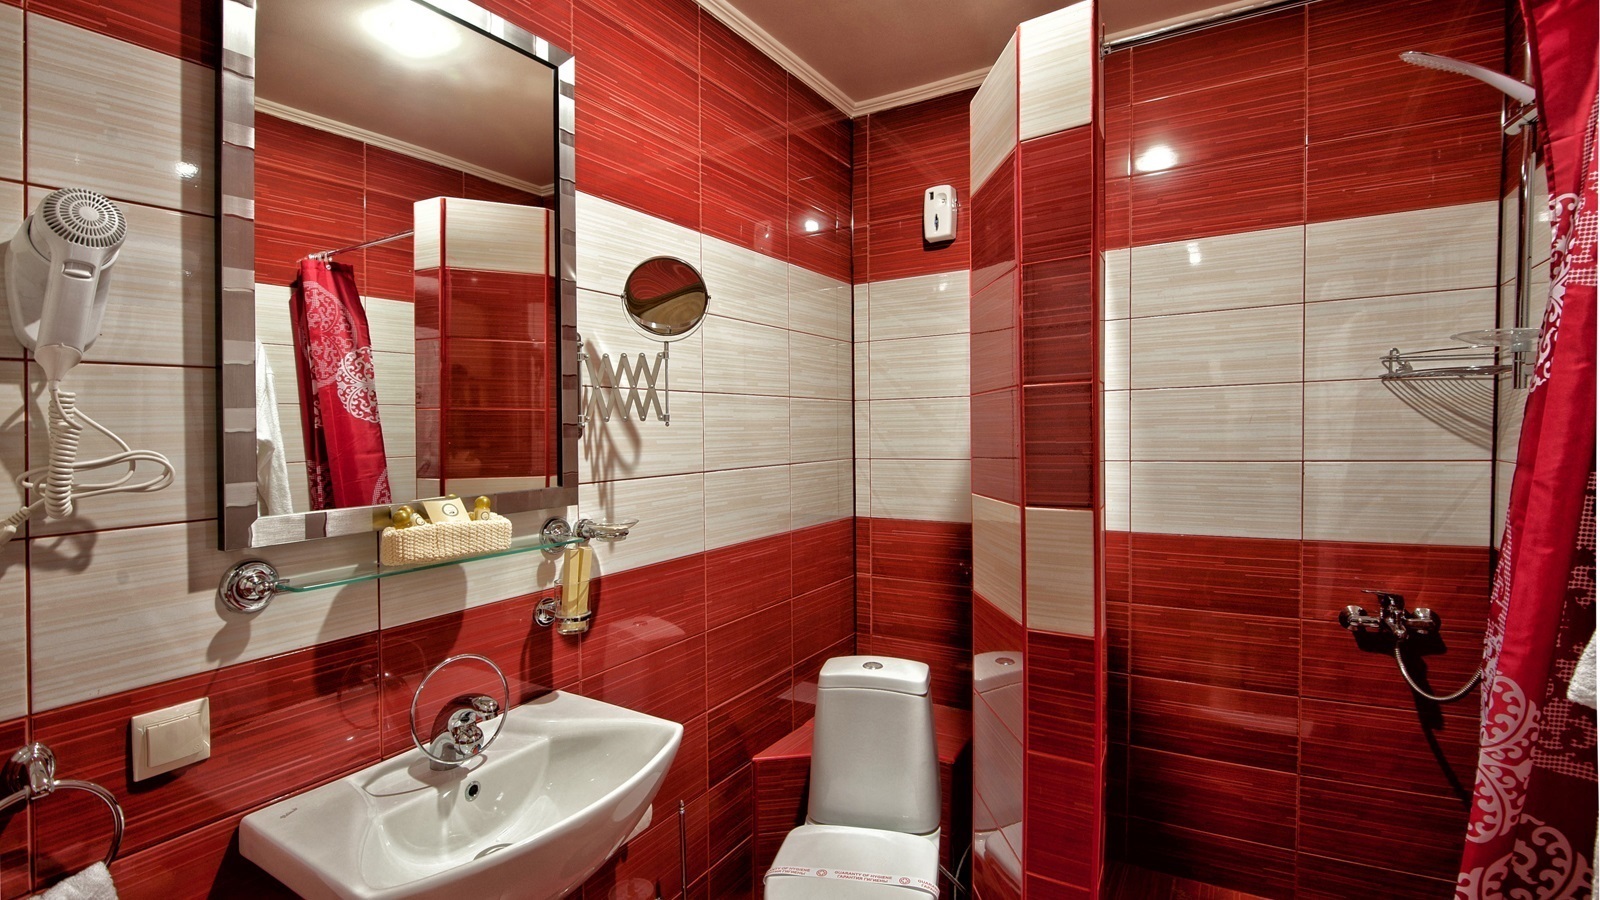 opcija neobičnog interijera kupaonice od 5 m²